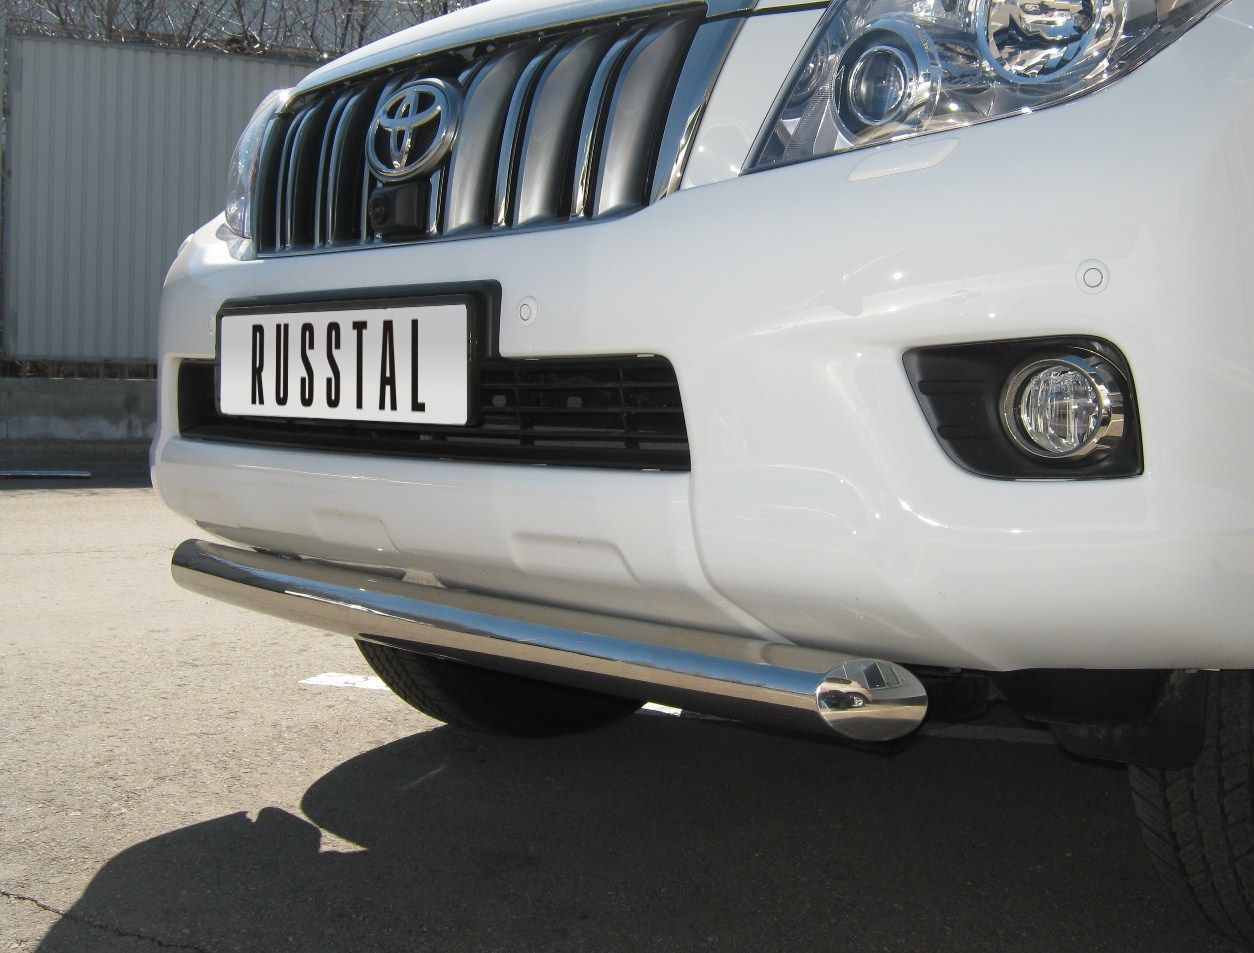 Передняя защита Russtal для Toyota Land Cruiser Prado 150 (2009-2013)